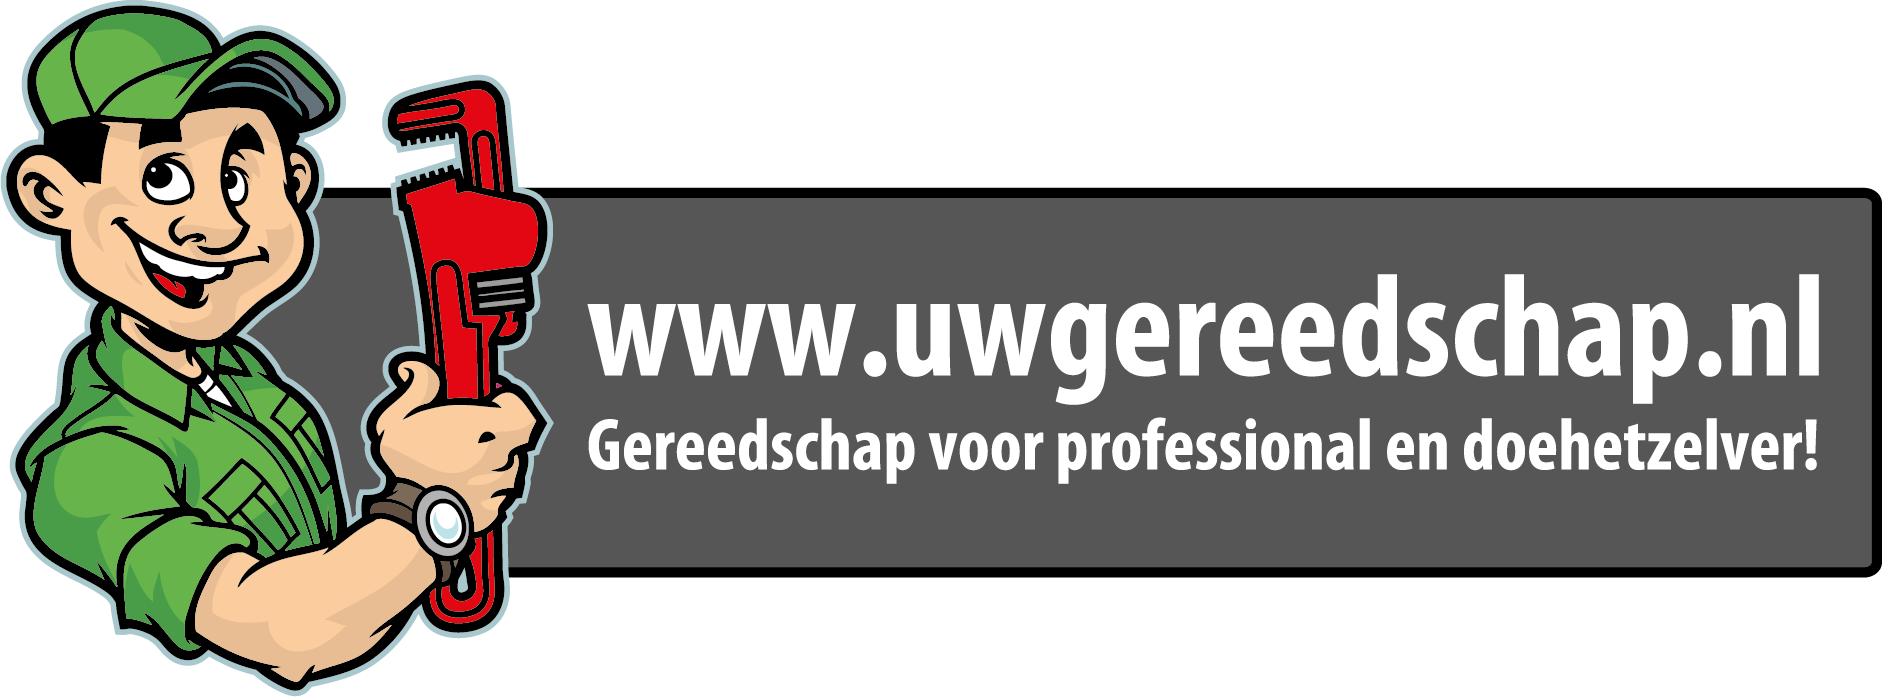 Uwgereedschap.nl | ervaringen Uwgereedschap.nl - feedbackcompany.com